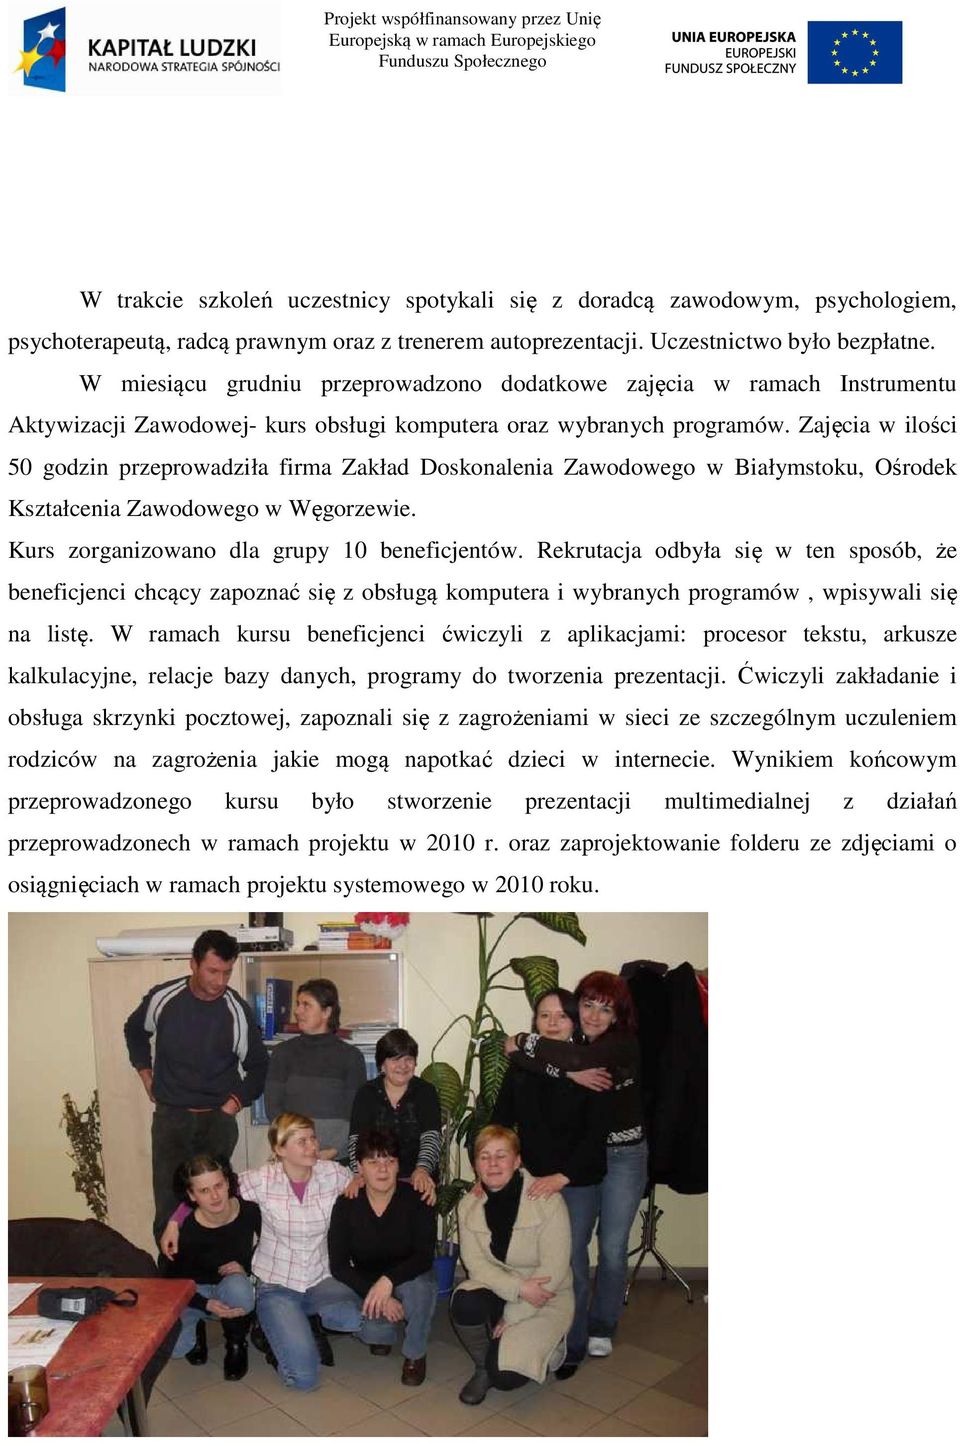 Zajęcia w ilości 50 godzin przeprowadziła firma Zakład Doskonalenia Zawodowego w Białymstoku, Ośrodek Kształcenia Zawodowego w Węgorzewie. Kurs zorganizowano dla grupy 10 beneficjentów.